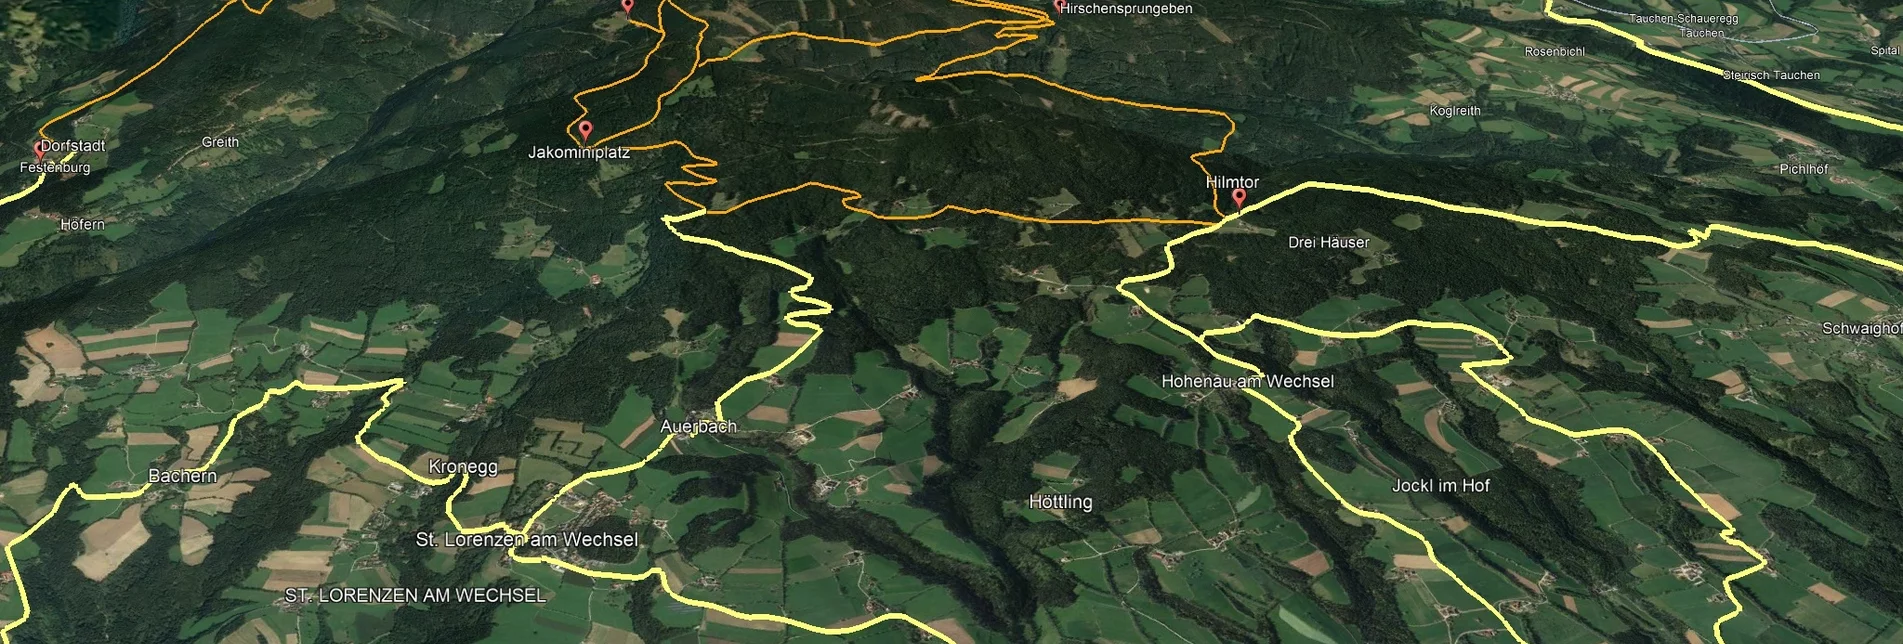 Mountain Biking Styrian Wexl Trails - Thalberg feeder road to St. Lorenzen am Wechsel (connection) - Touren-Impression #1 | © Verein Tourismusentwicklung Steirischer Wechsel